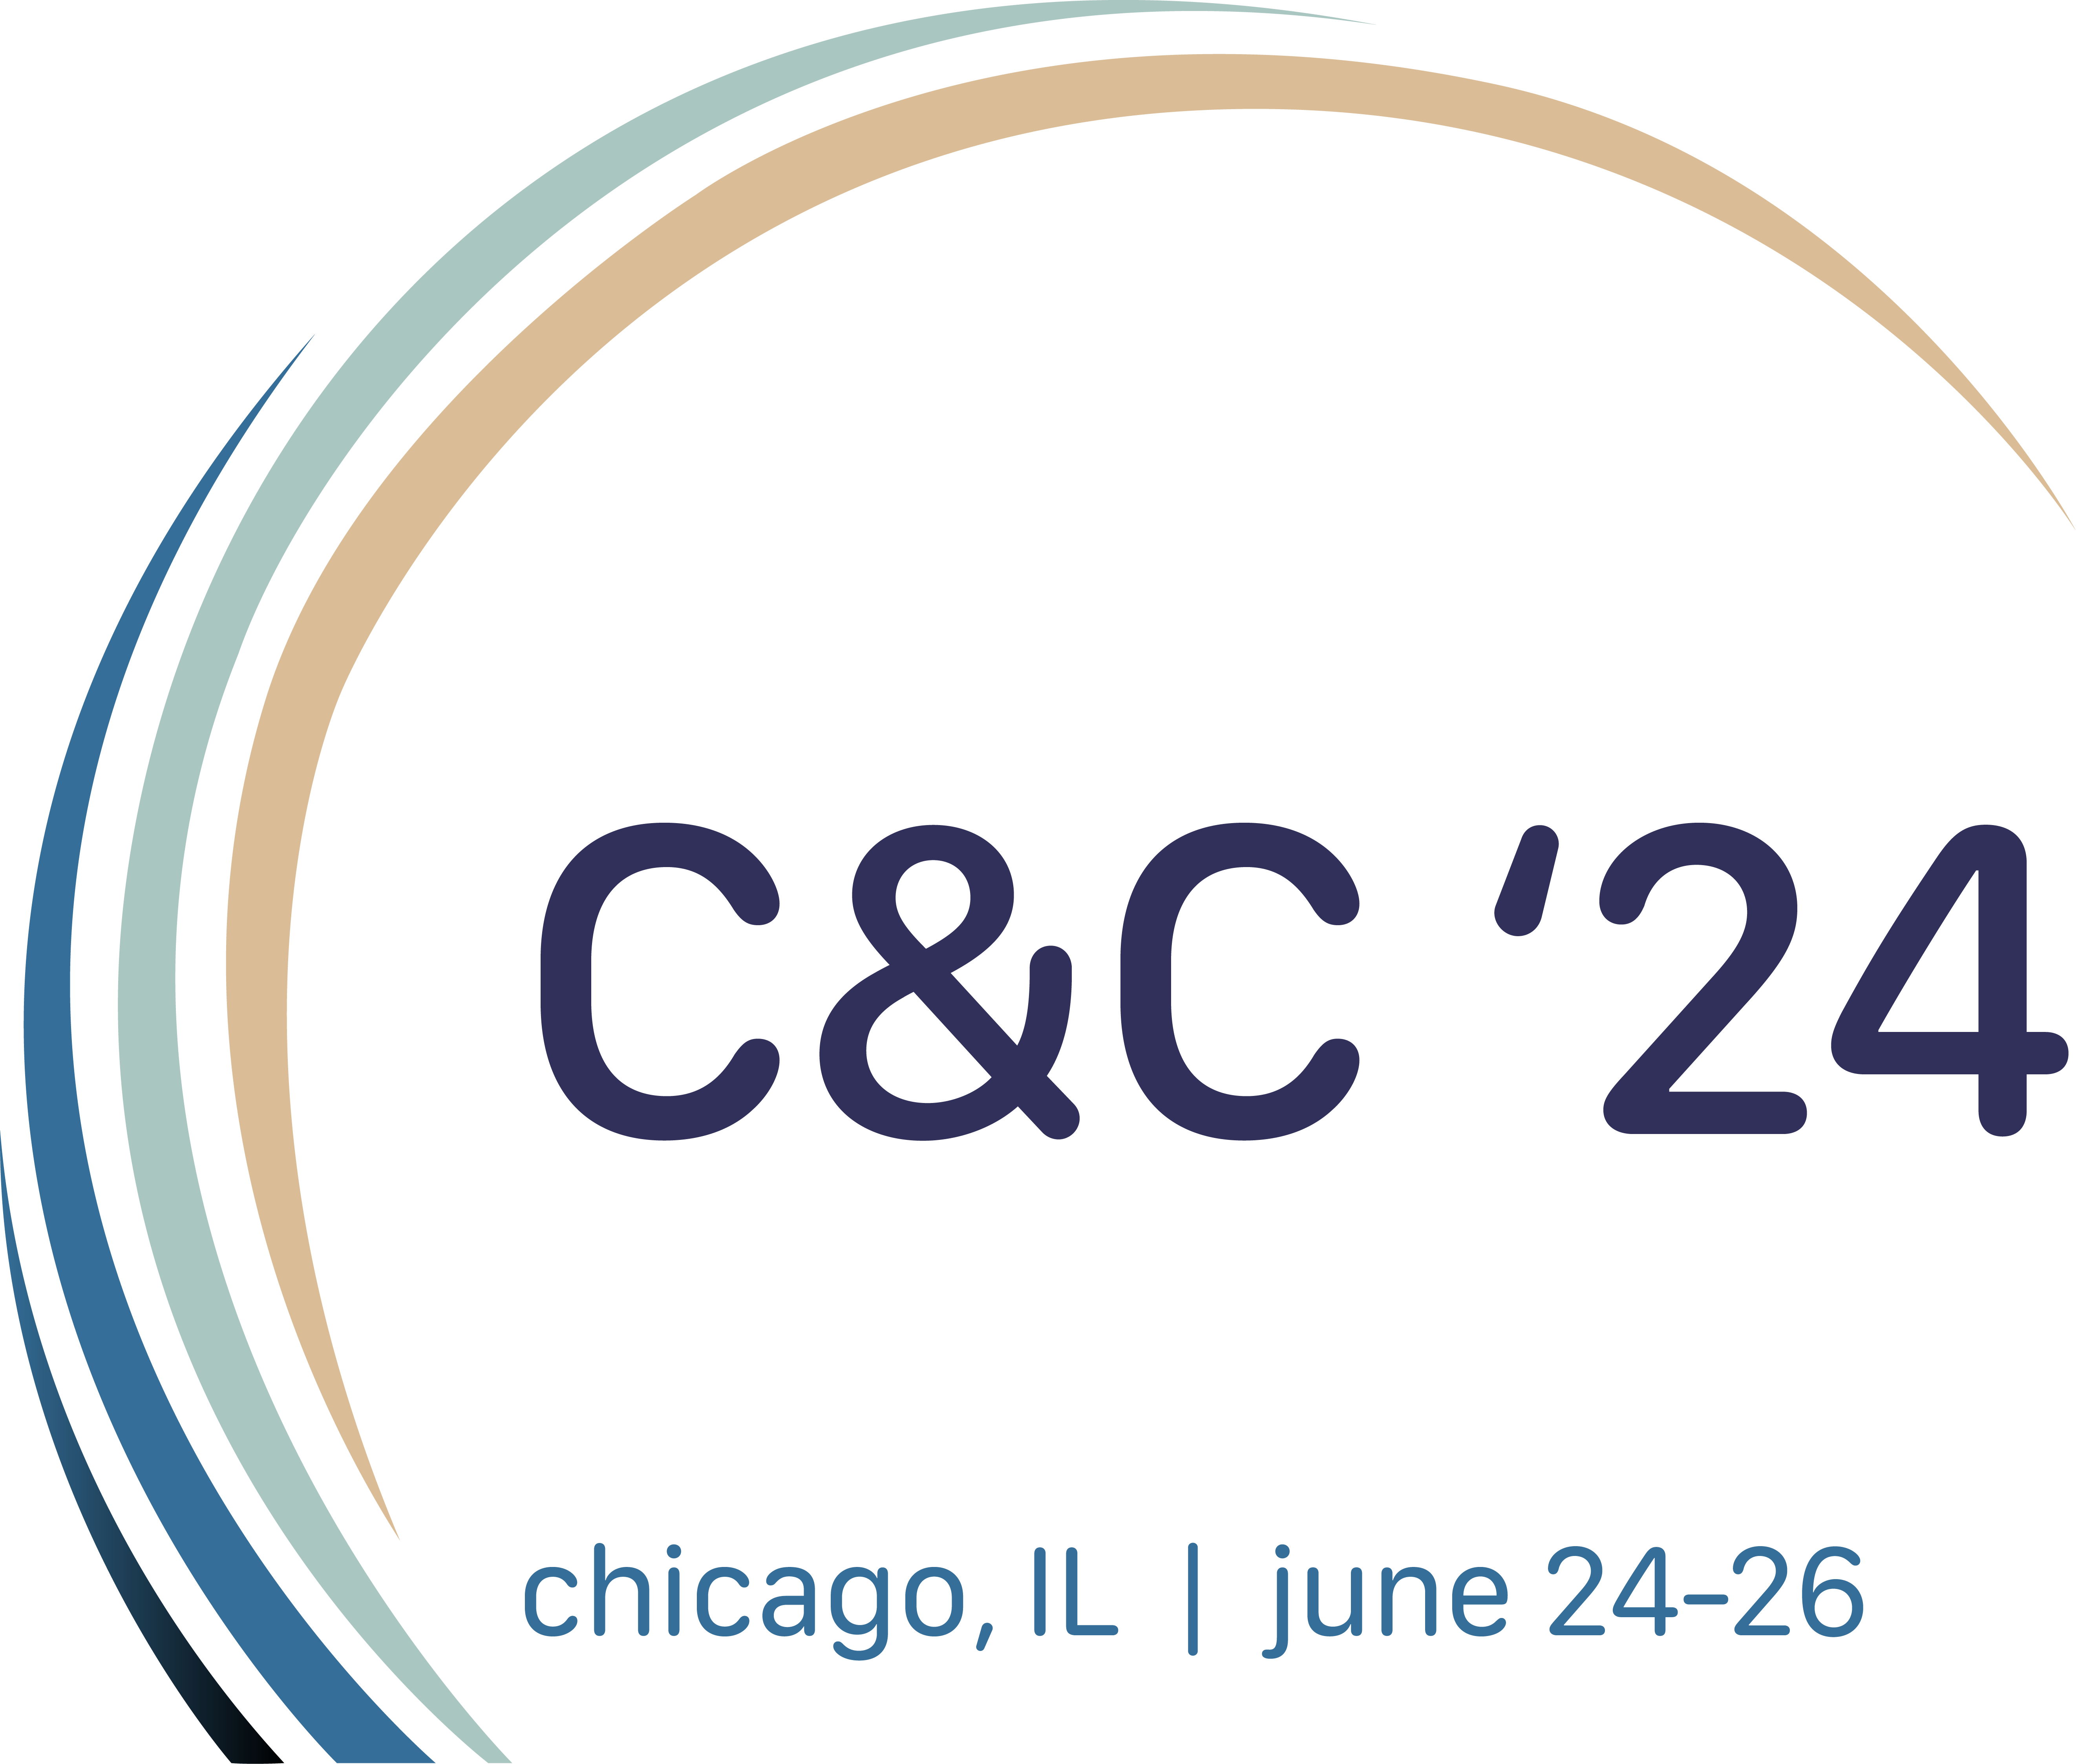 c&c '24, chicago, IL, june 24-26